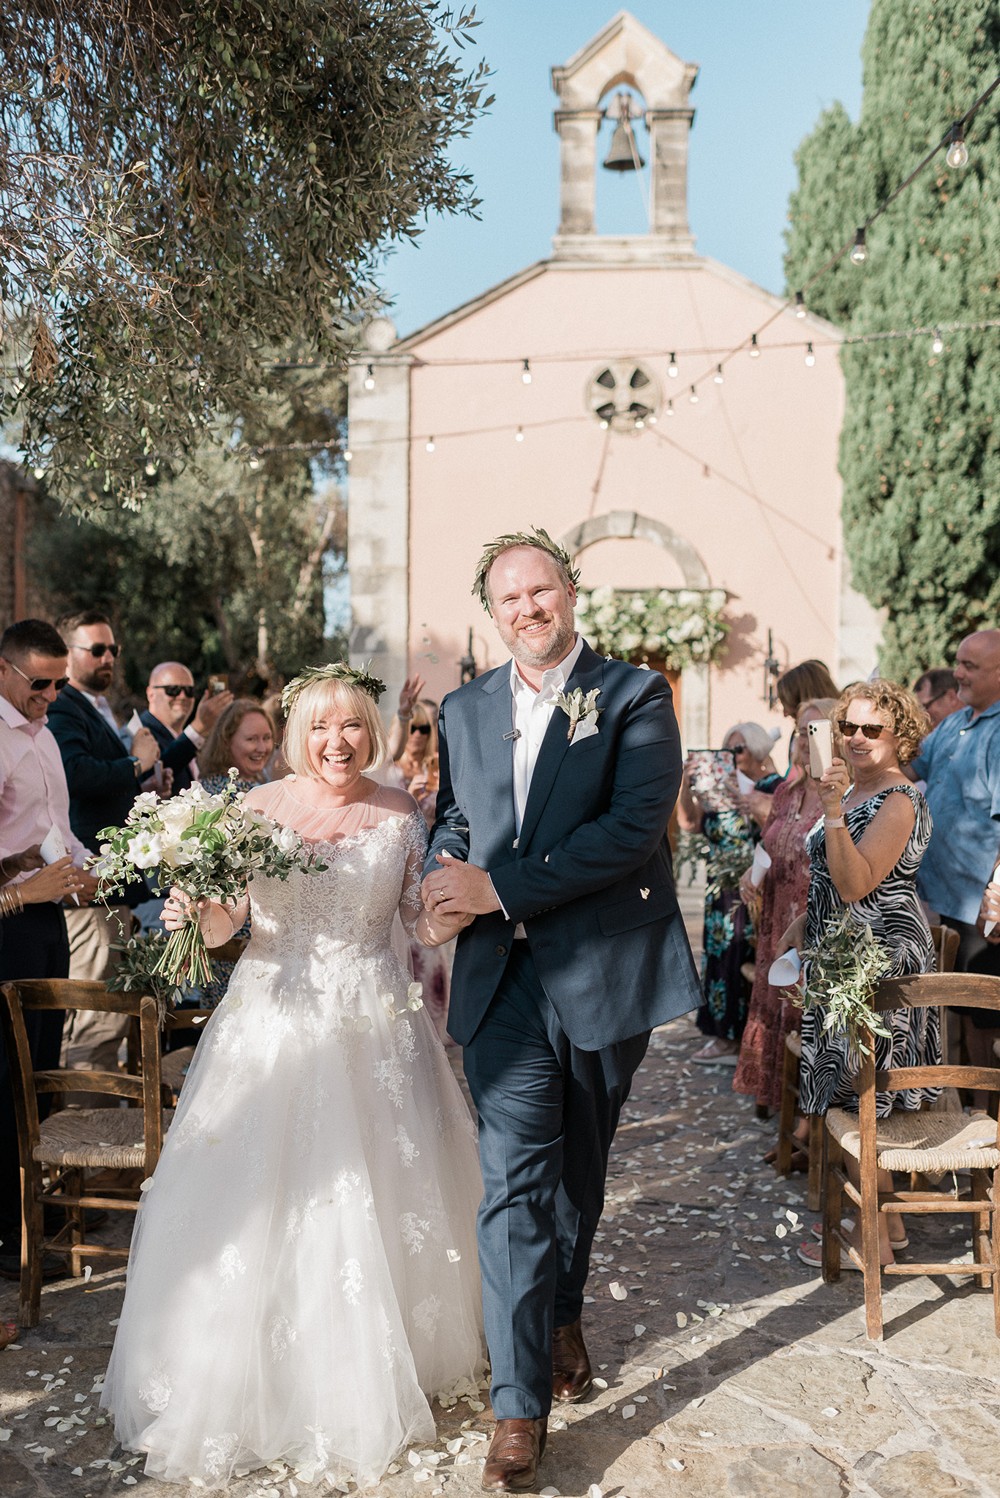 Greek style wedding at Cretan farm